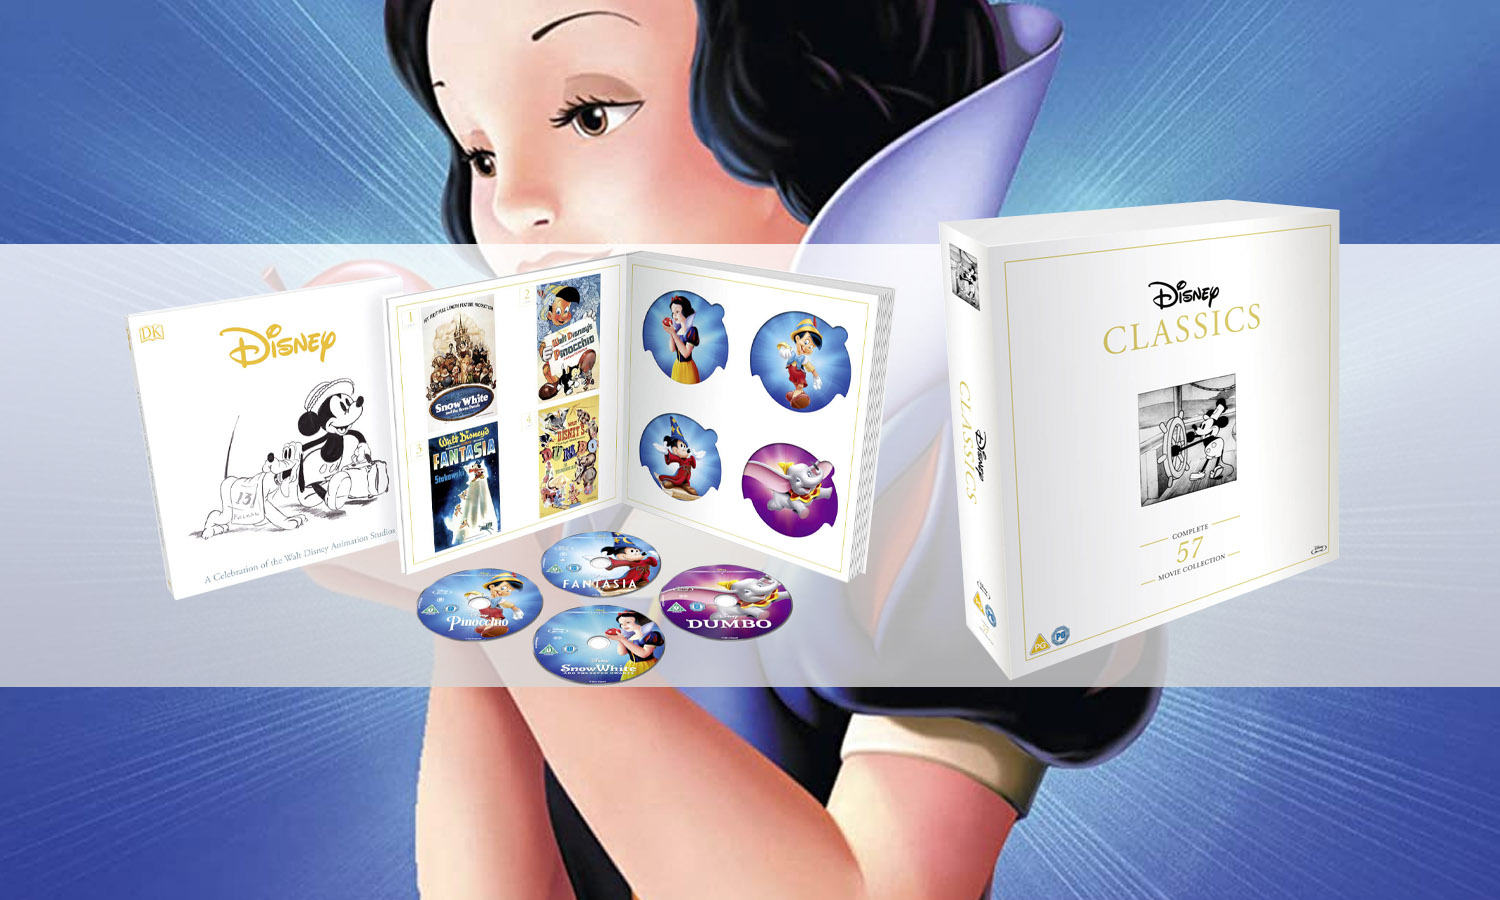 Coffret Disney (57 disques) en édition limitée BluRay [VO uniquement